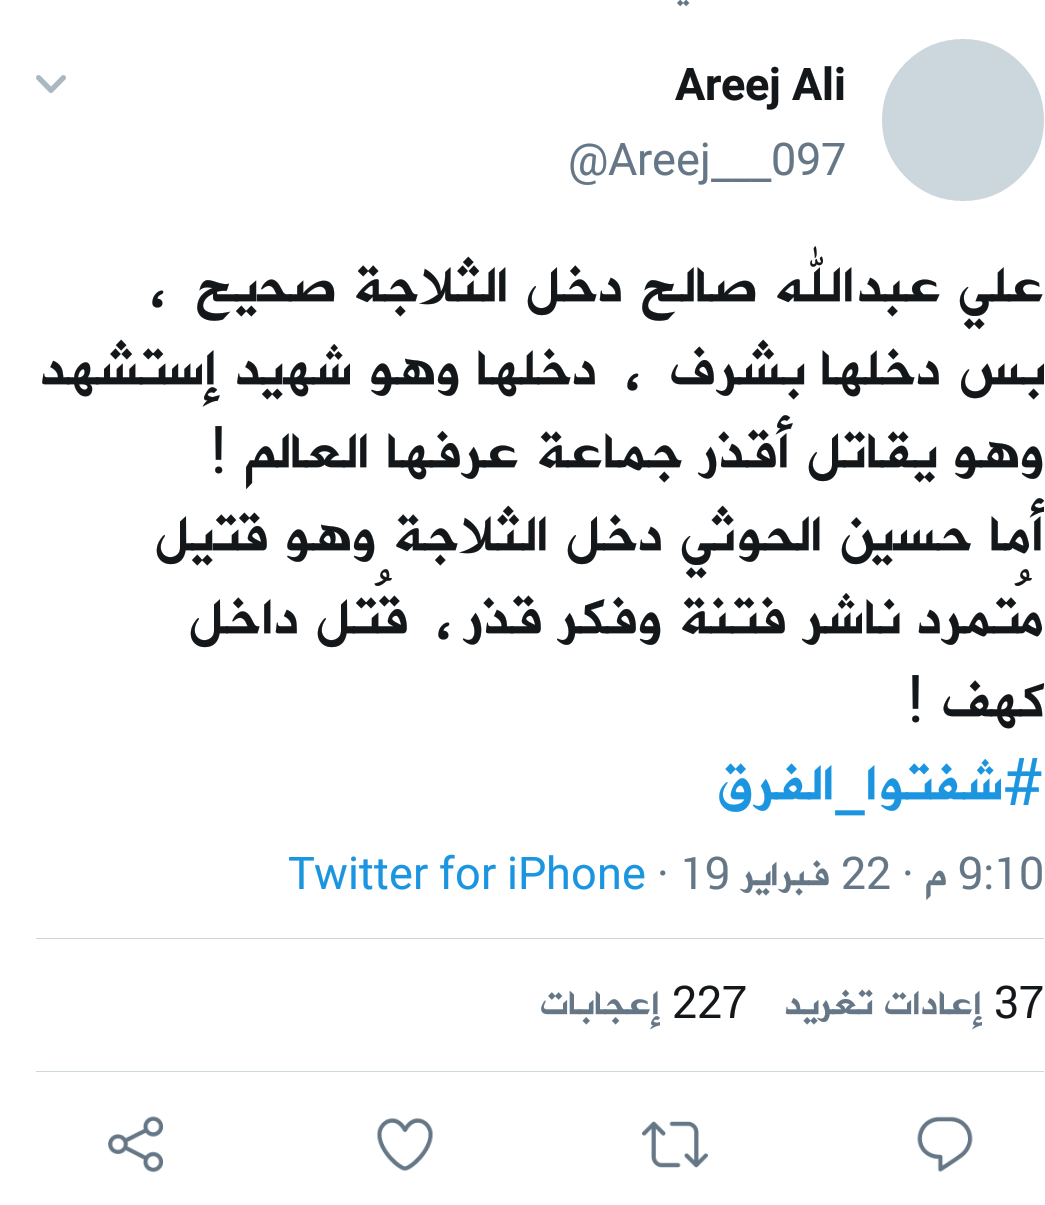 ناشطة يمنية : هذا هو الفرق بين علي عبدالله صالح وحسين الحوثي